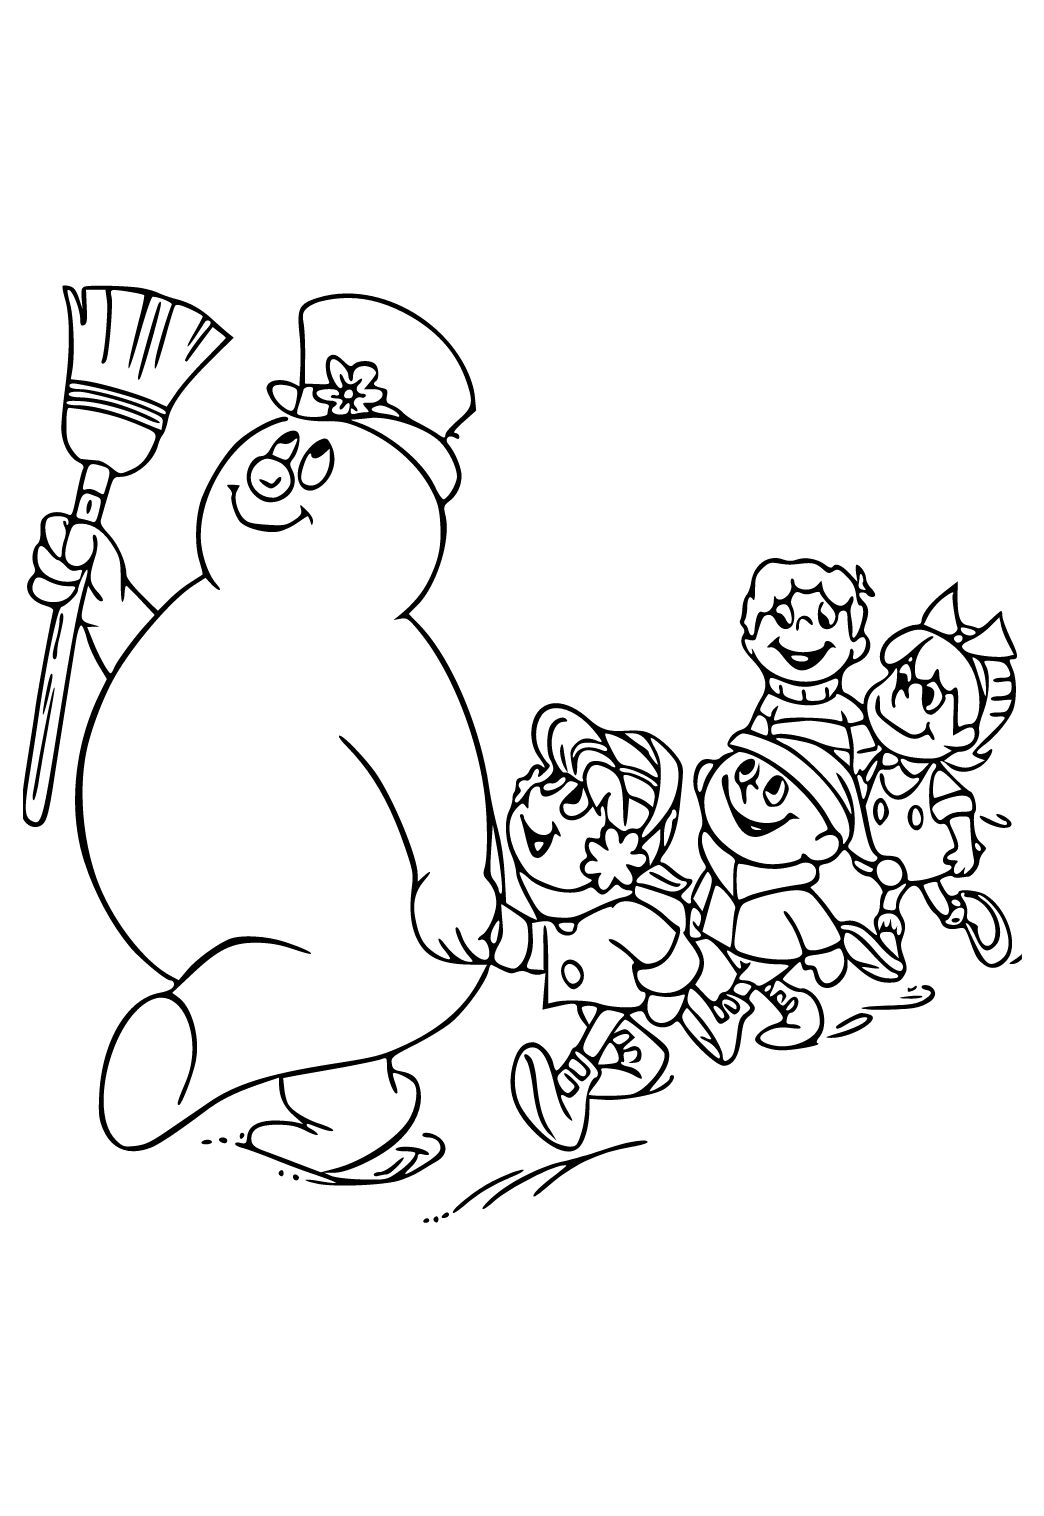 Frosty el Muñeco de Nieve